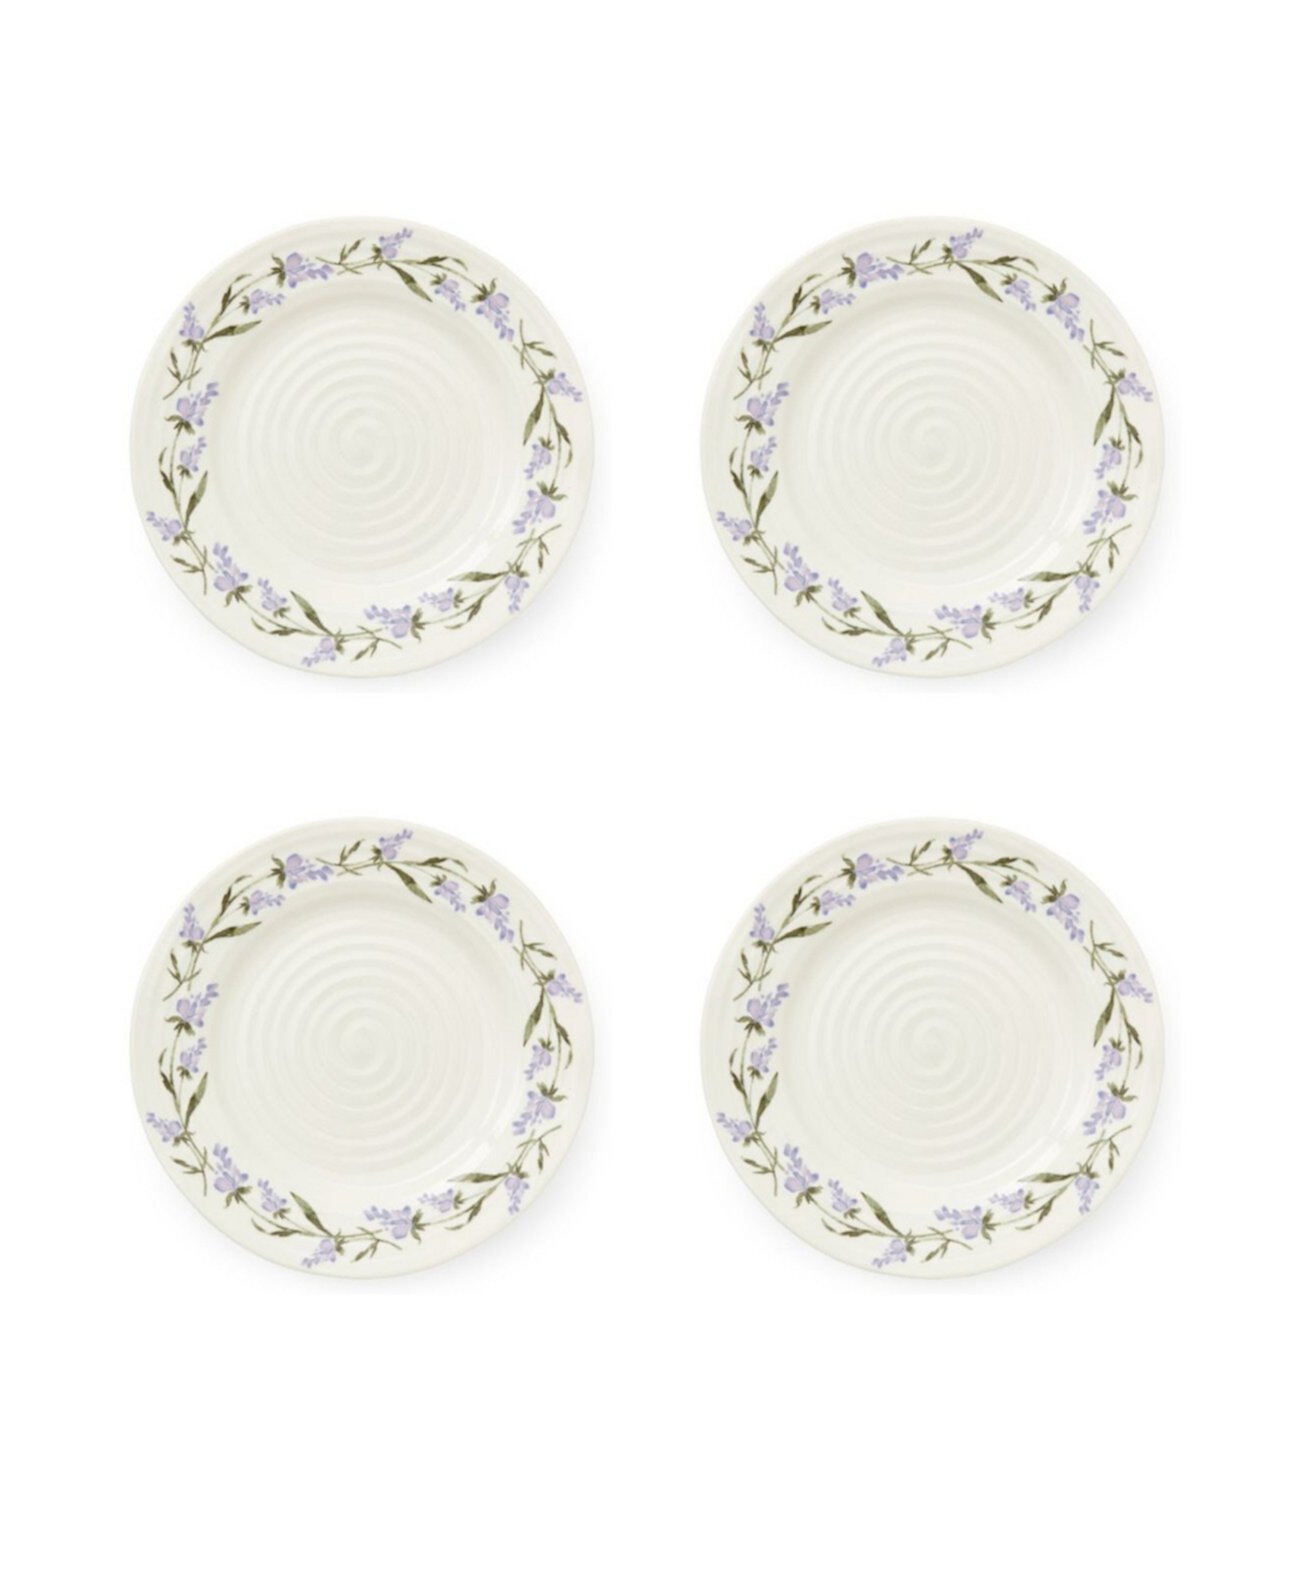 Sophie Conran Салатные тарелки с лавандой, набор из 4 шт. Portmeirion